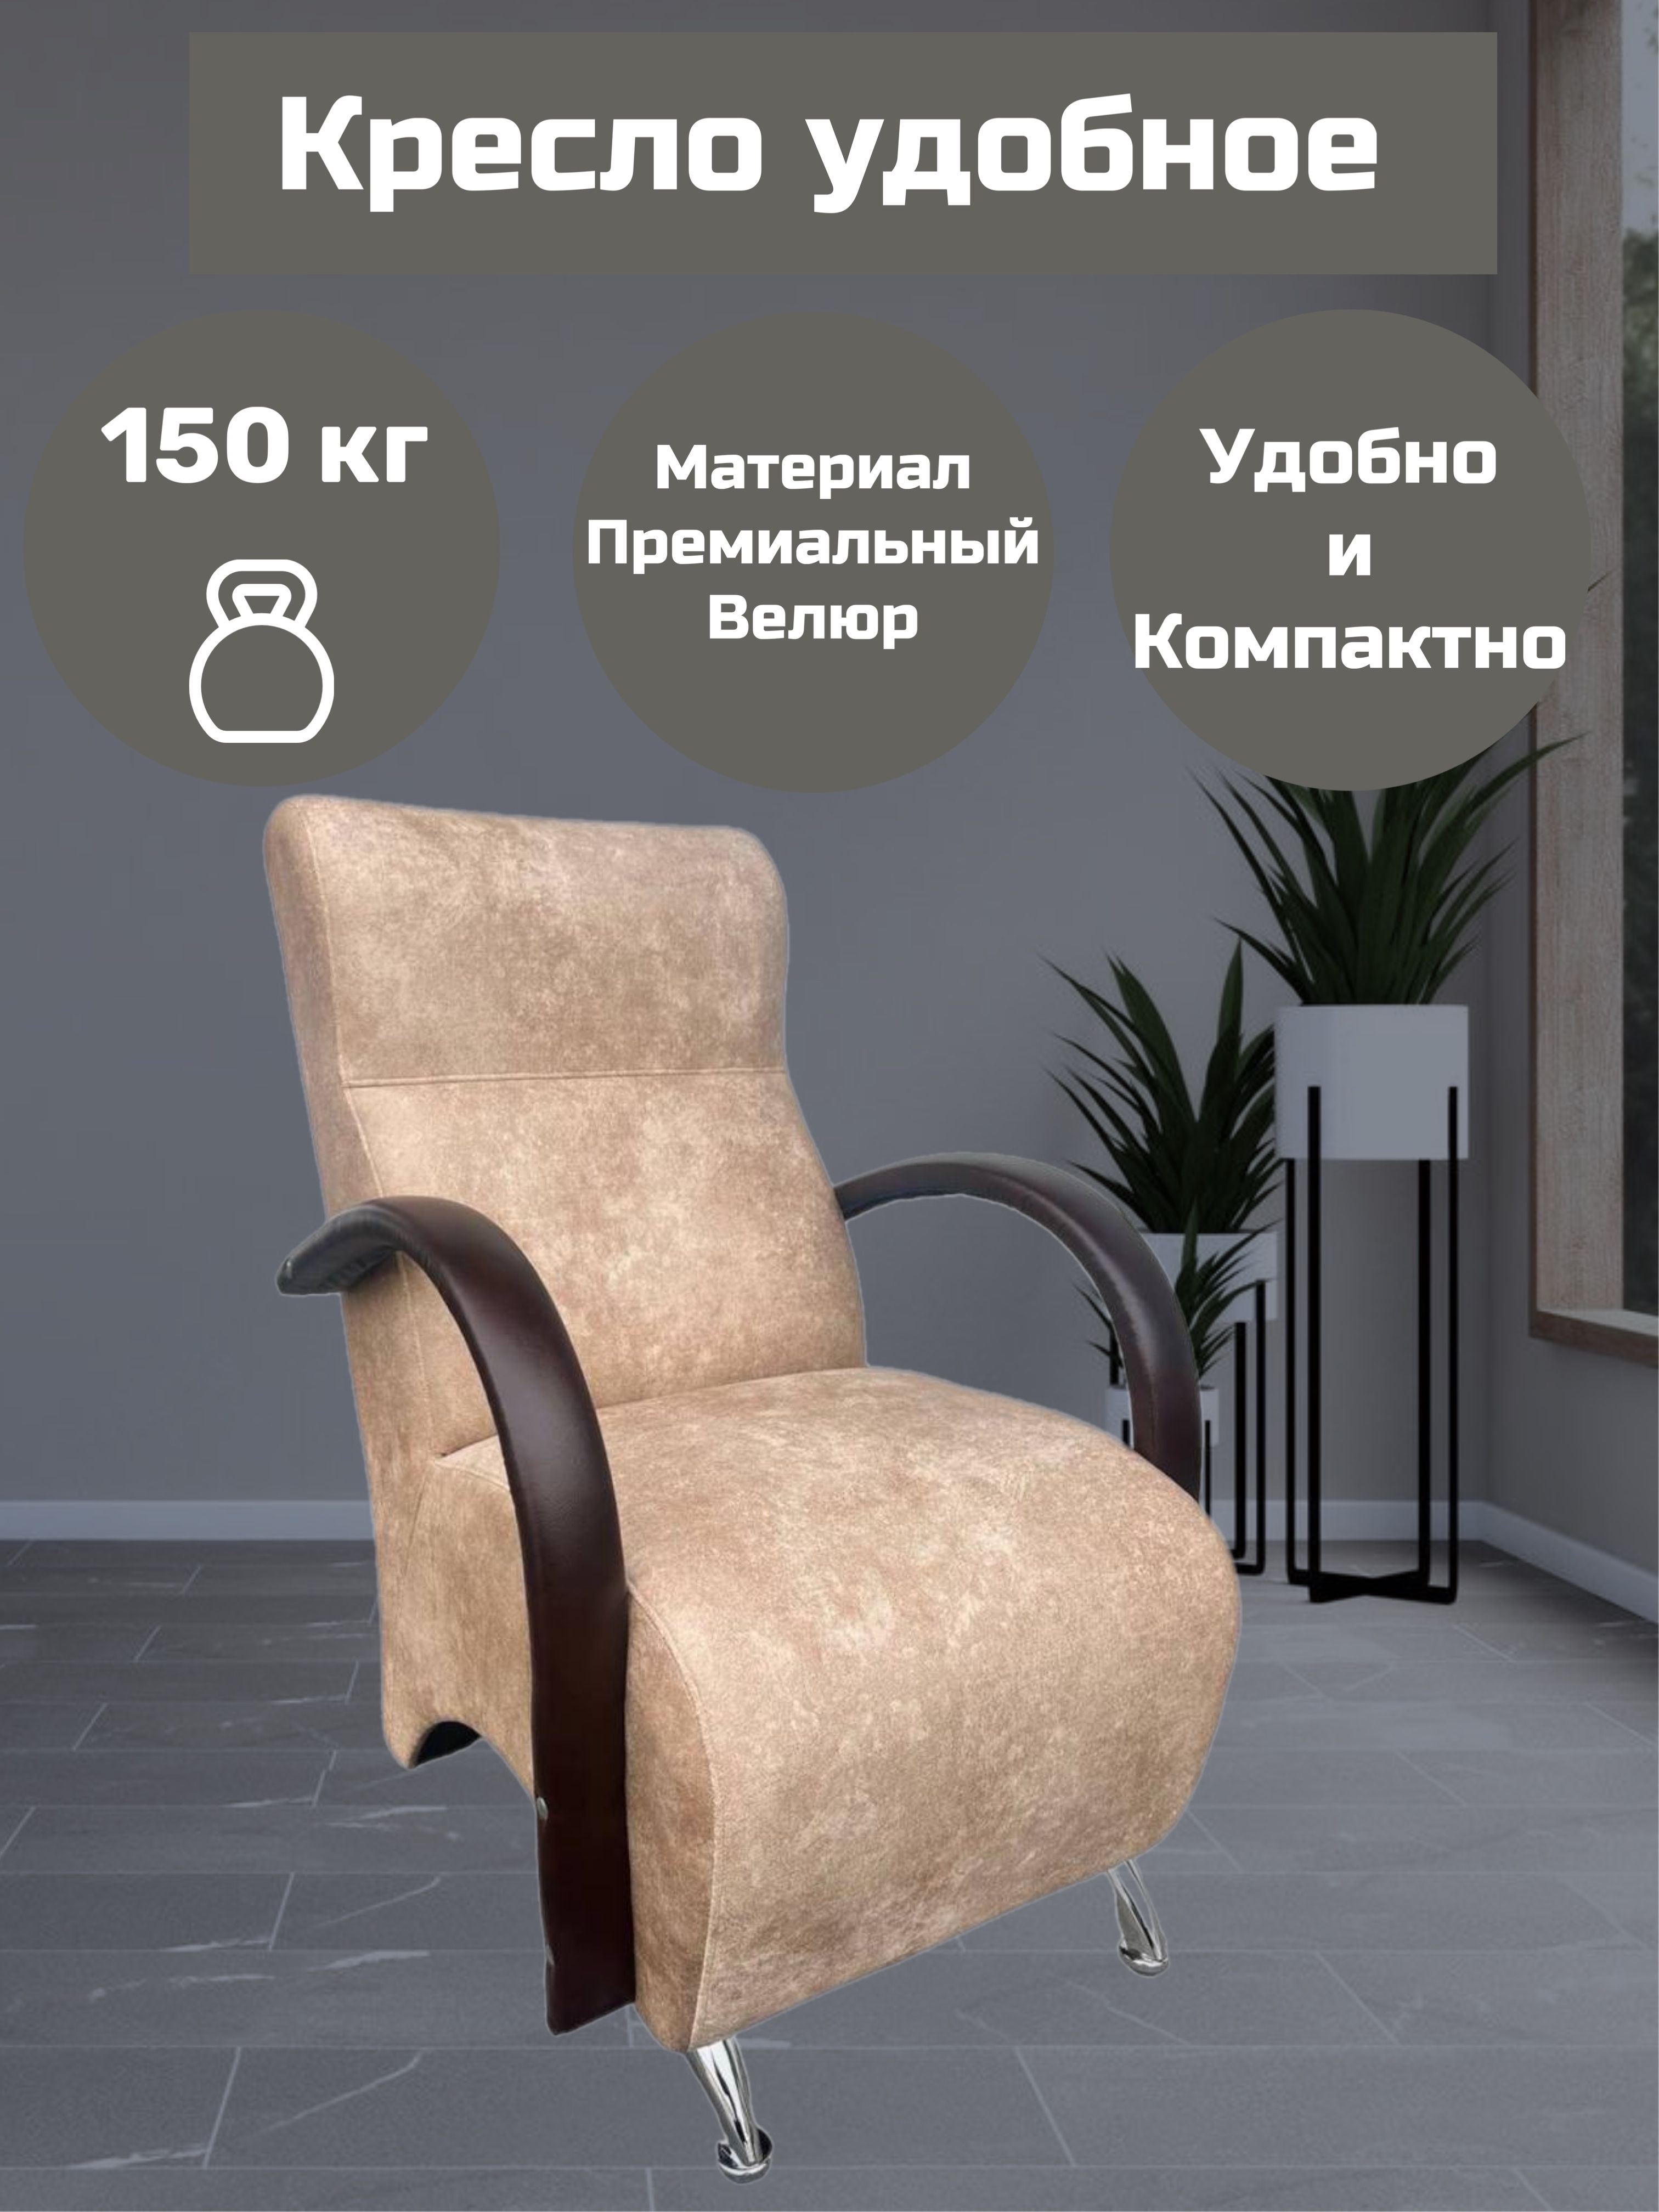 Кресло-удобноематериалВелюр,цветбежевый(Loft3)